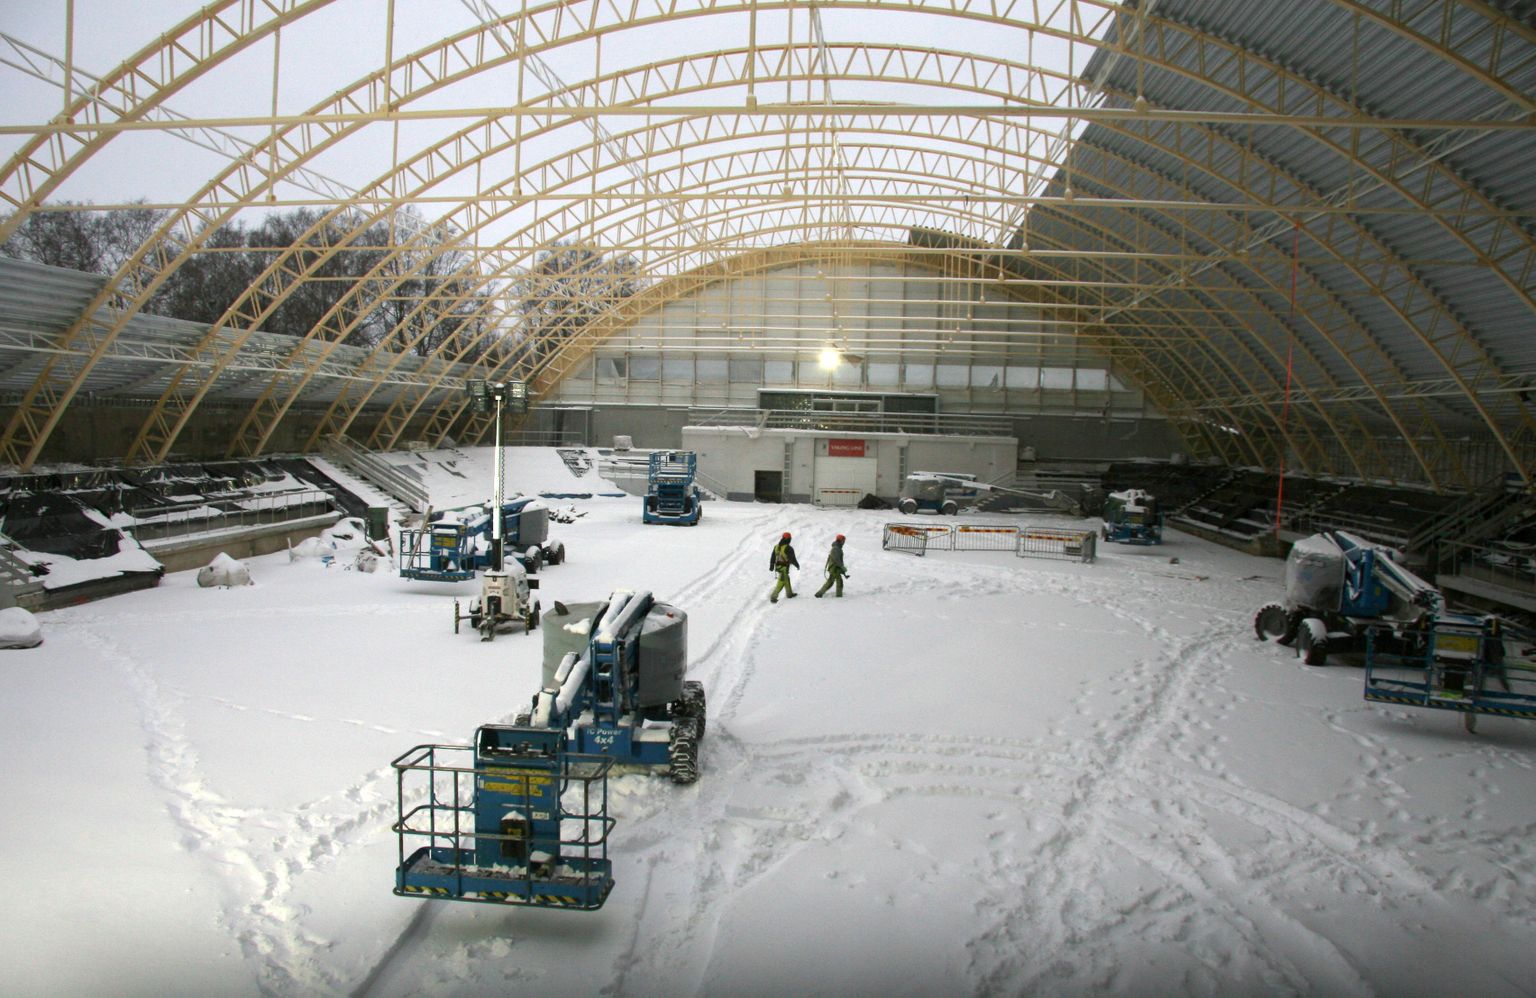 Зима не стала ждать - в конце ноября строителям приходится шагать по сугробам даже внутри ледового холла.